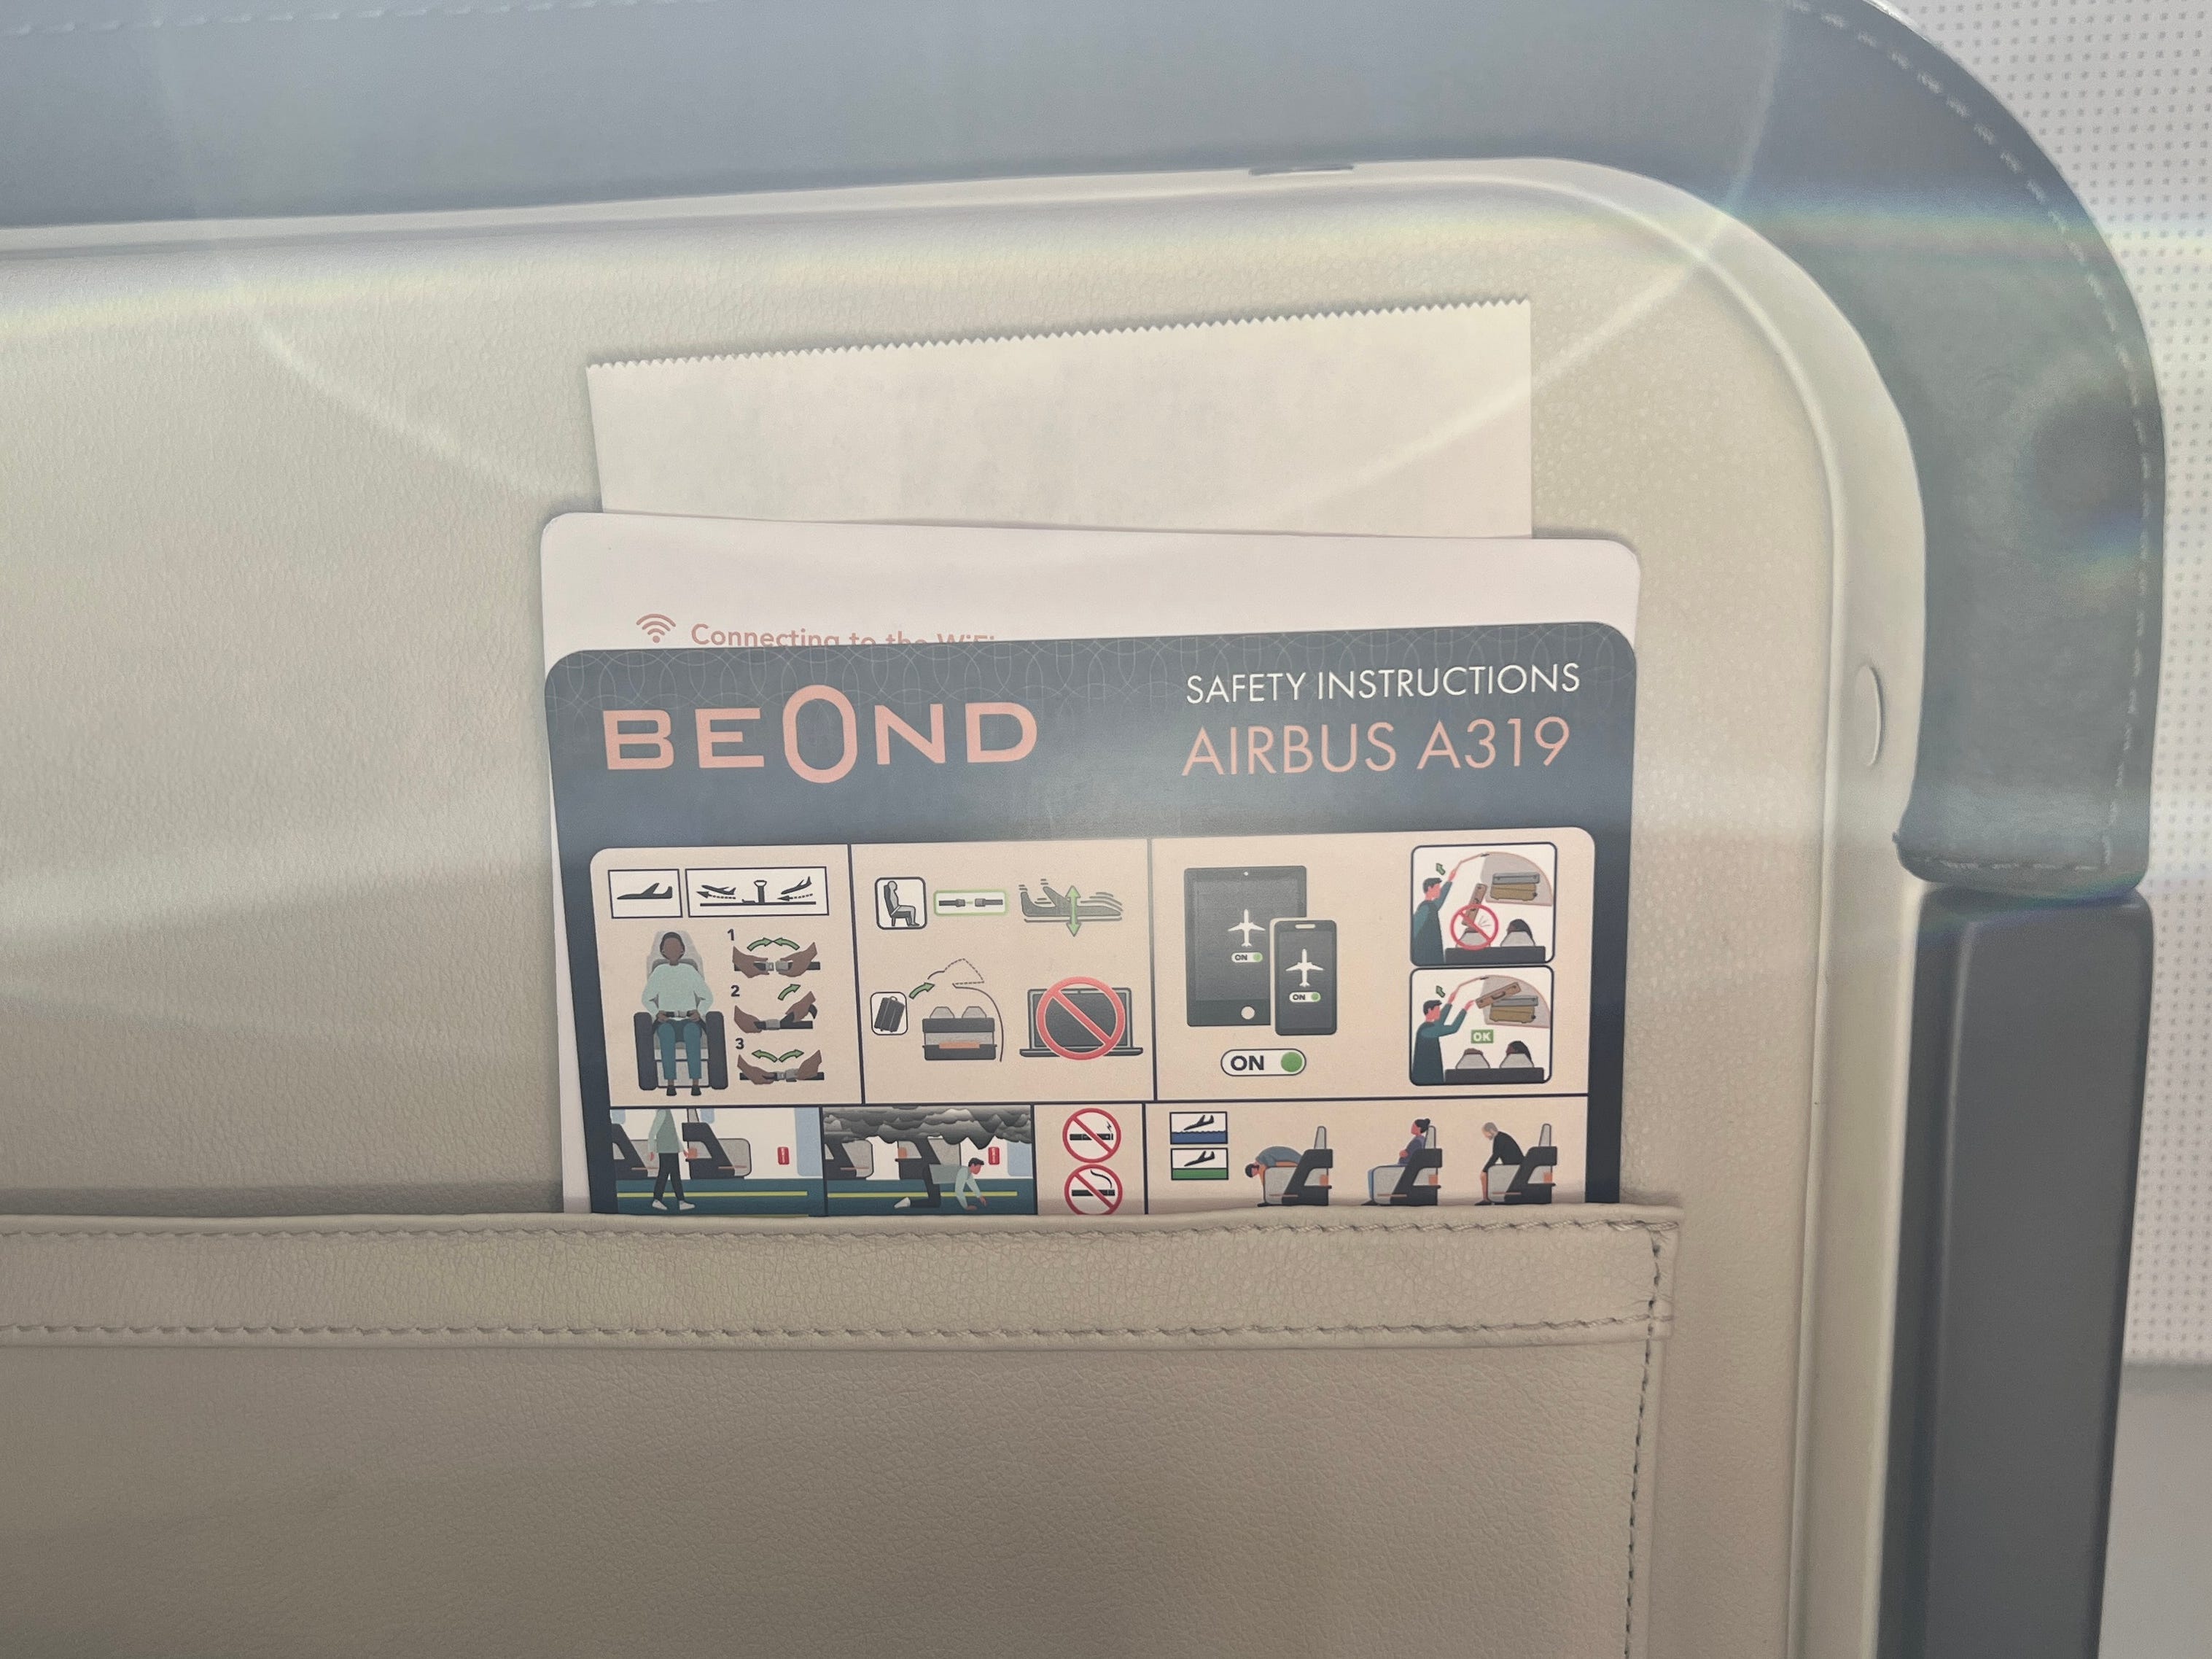 Die Sicherheitsanweisungen für den Airbus A319 in der Sitztasche eines Beond-Flugzeugs